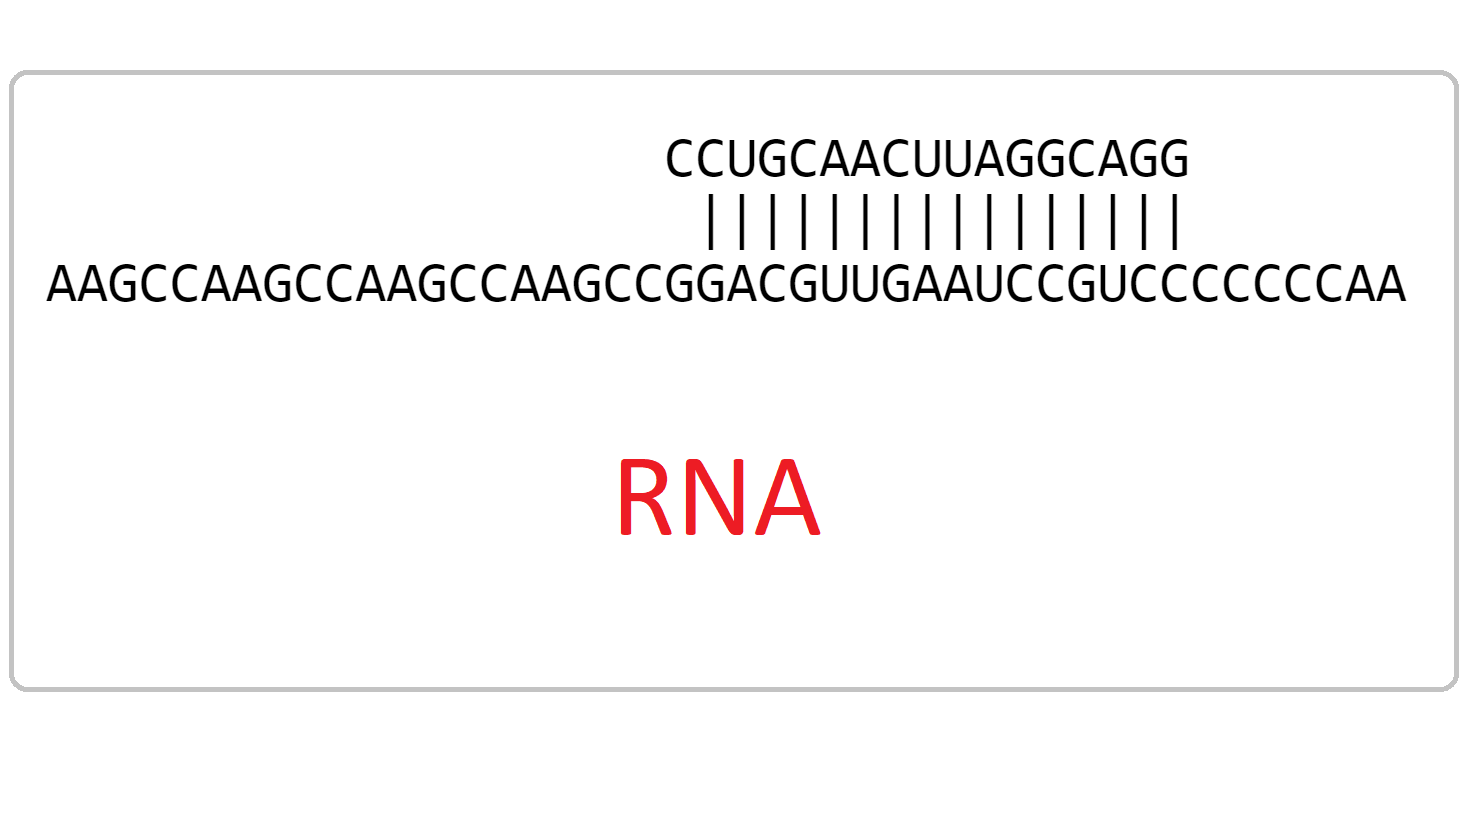 RNA-complementarity